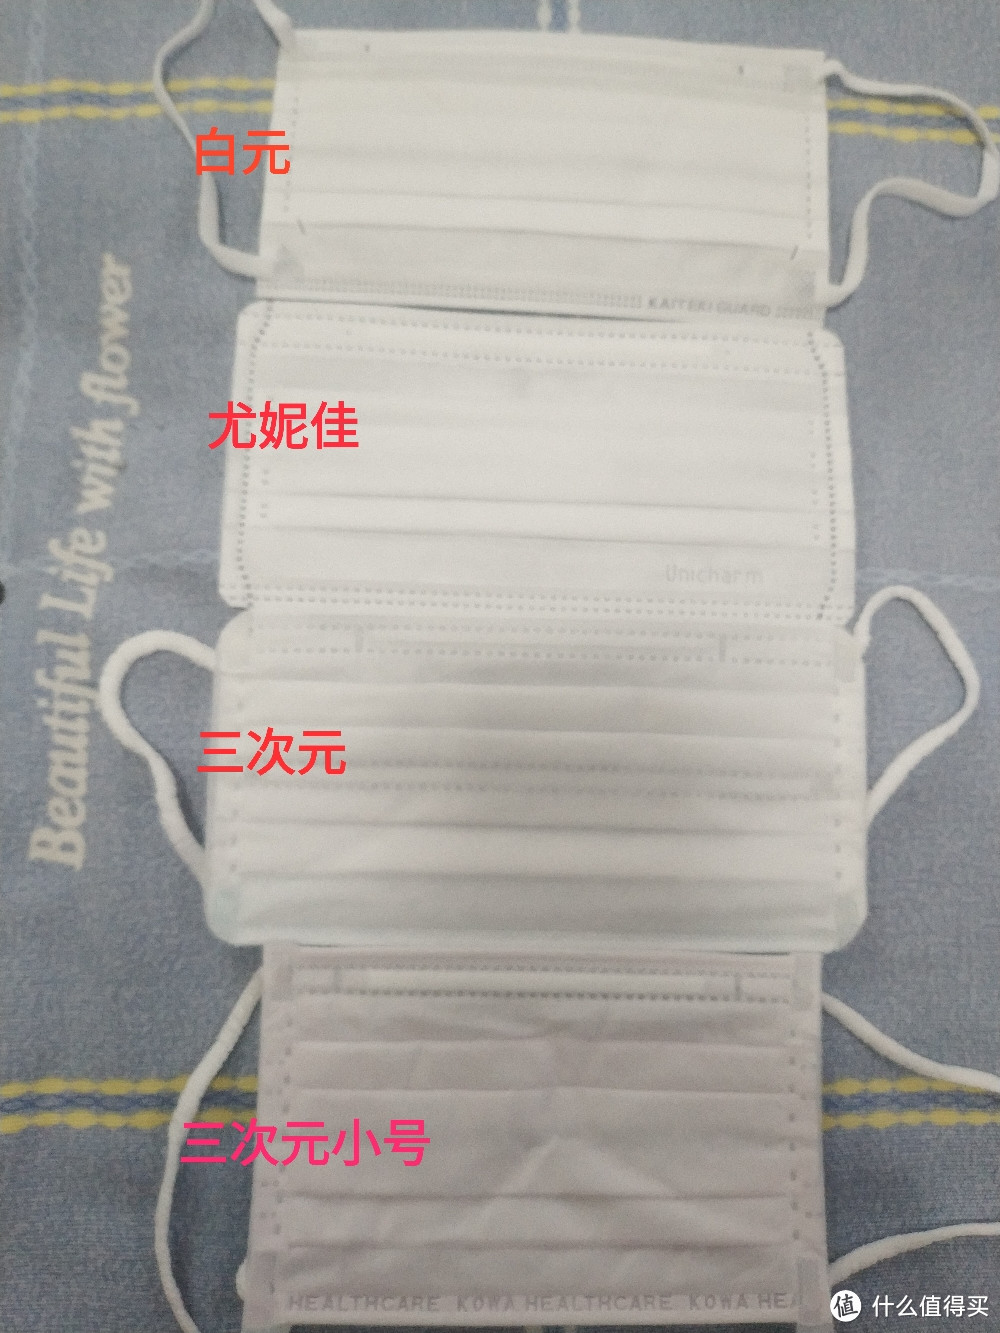 日本白元、尤妮佳、兴和三次元3种口罩简单对比